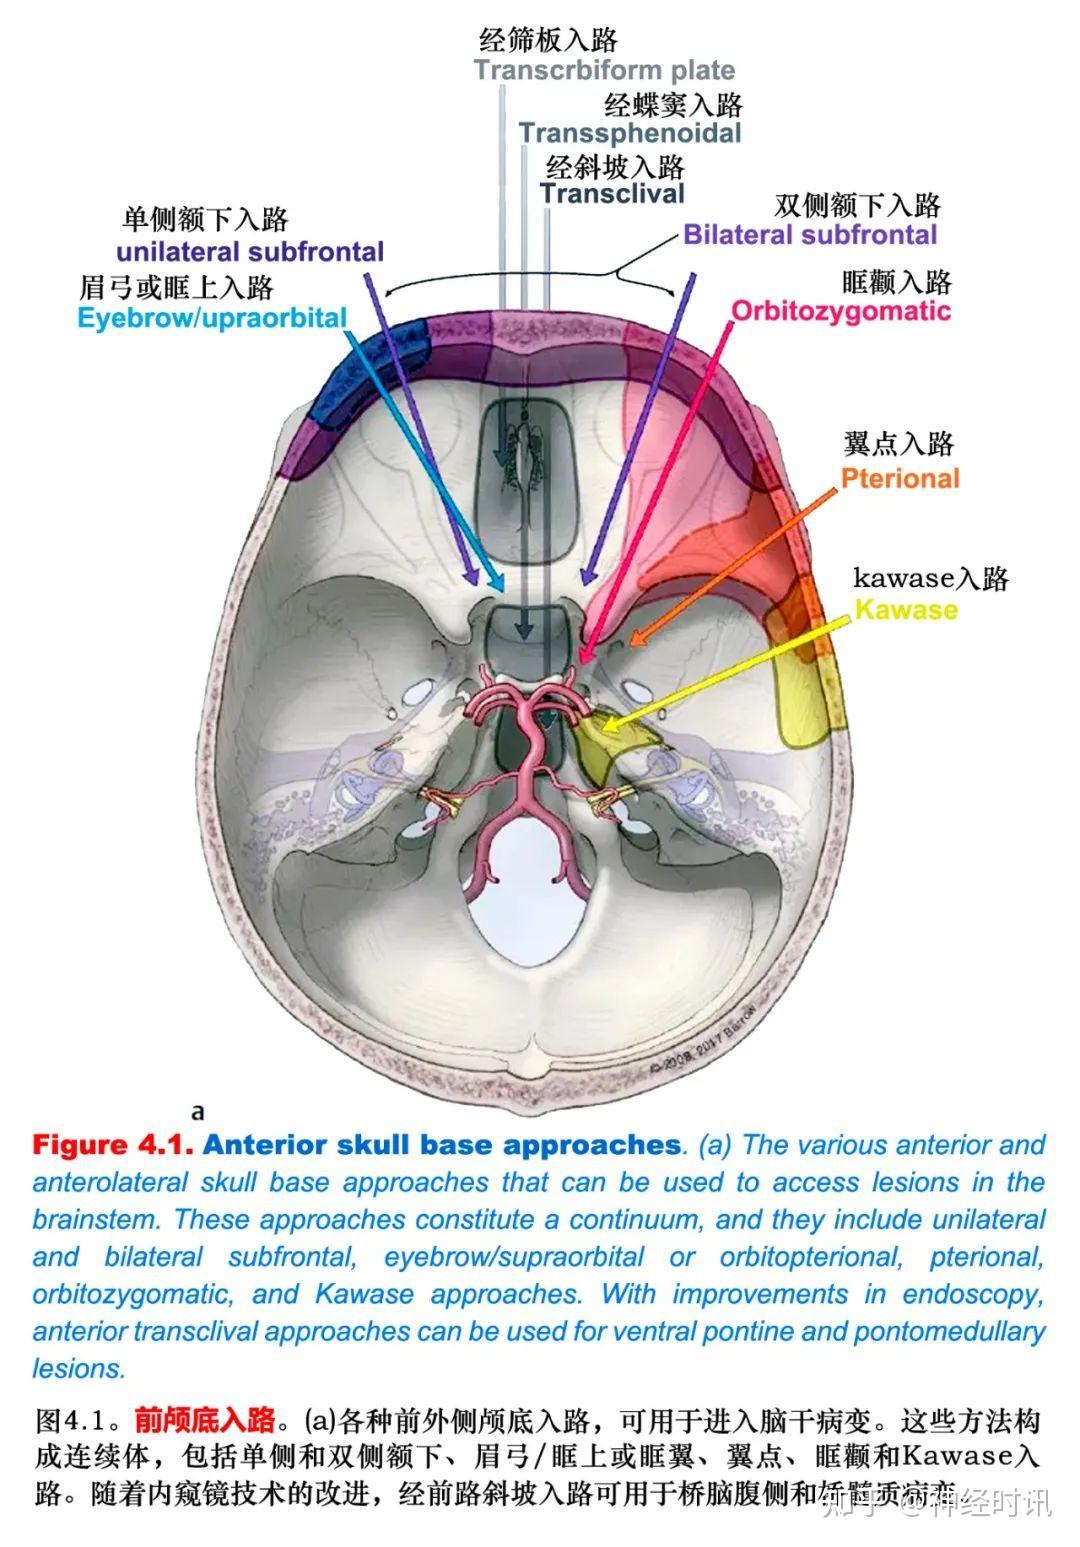 神经外科手术入路总结图|路组图|手术|综合|后颅窝|总结|-健康界